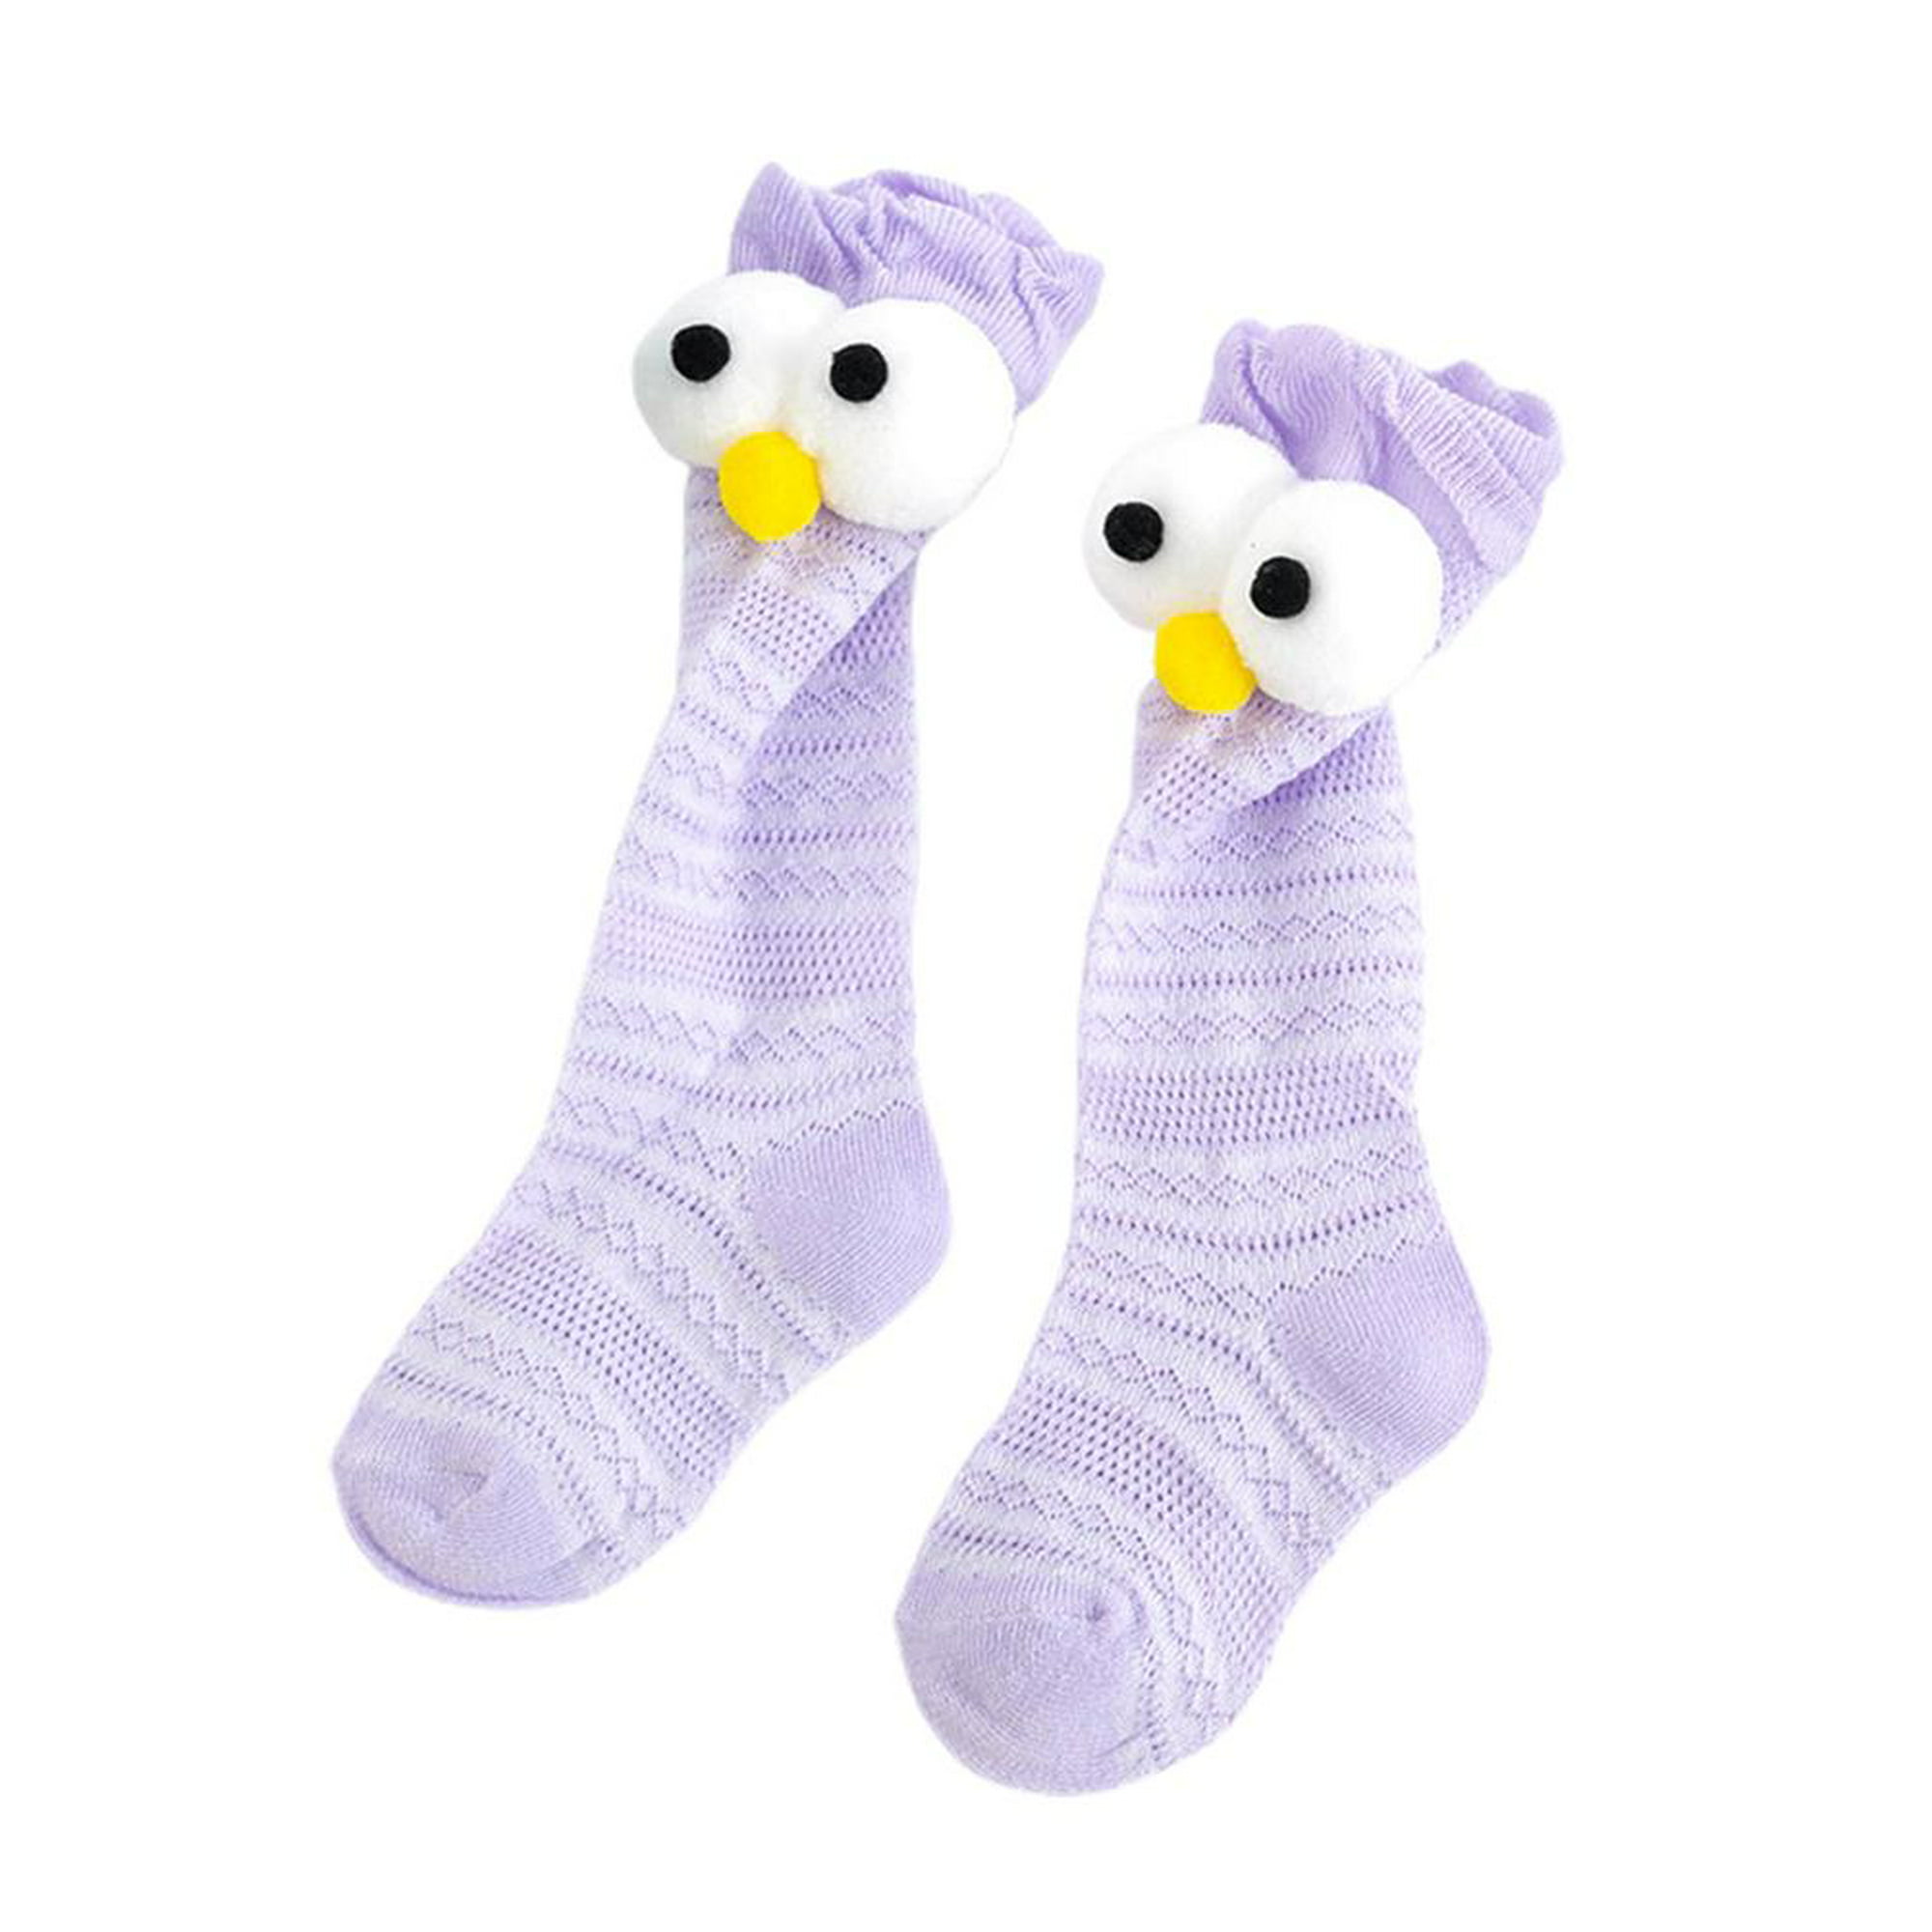  XYXINS 5 pares de calcetines de bebé recién nacidos para niñas  de punto acanalado de malla de verano delgados calcetines de bebé de  algodón para bebés casuales (color: rayas de niña